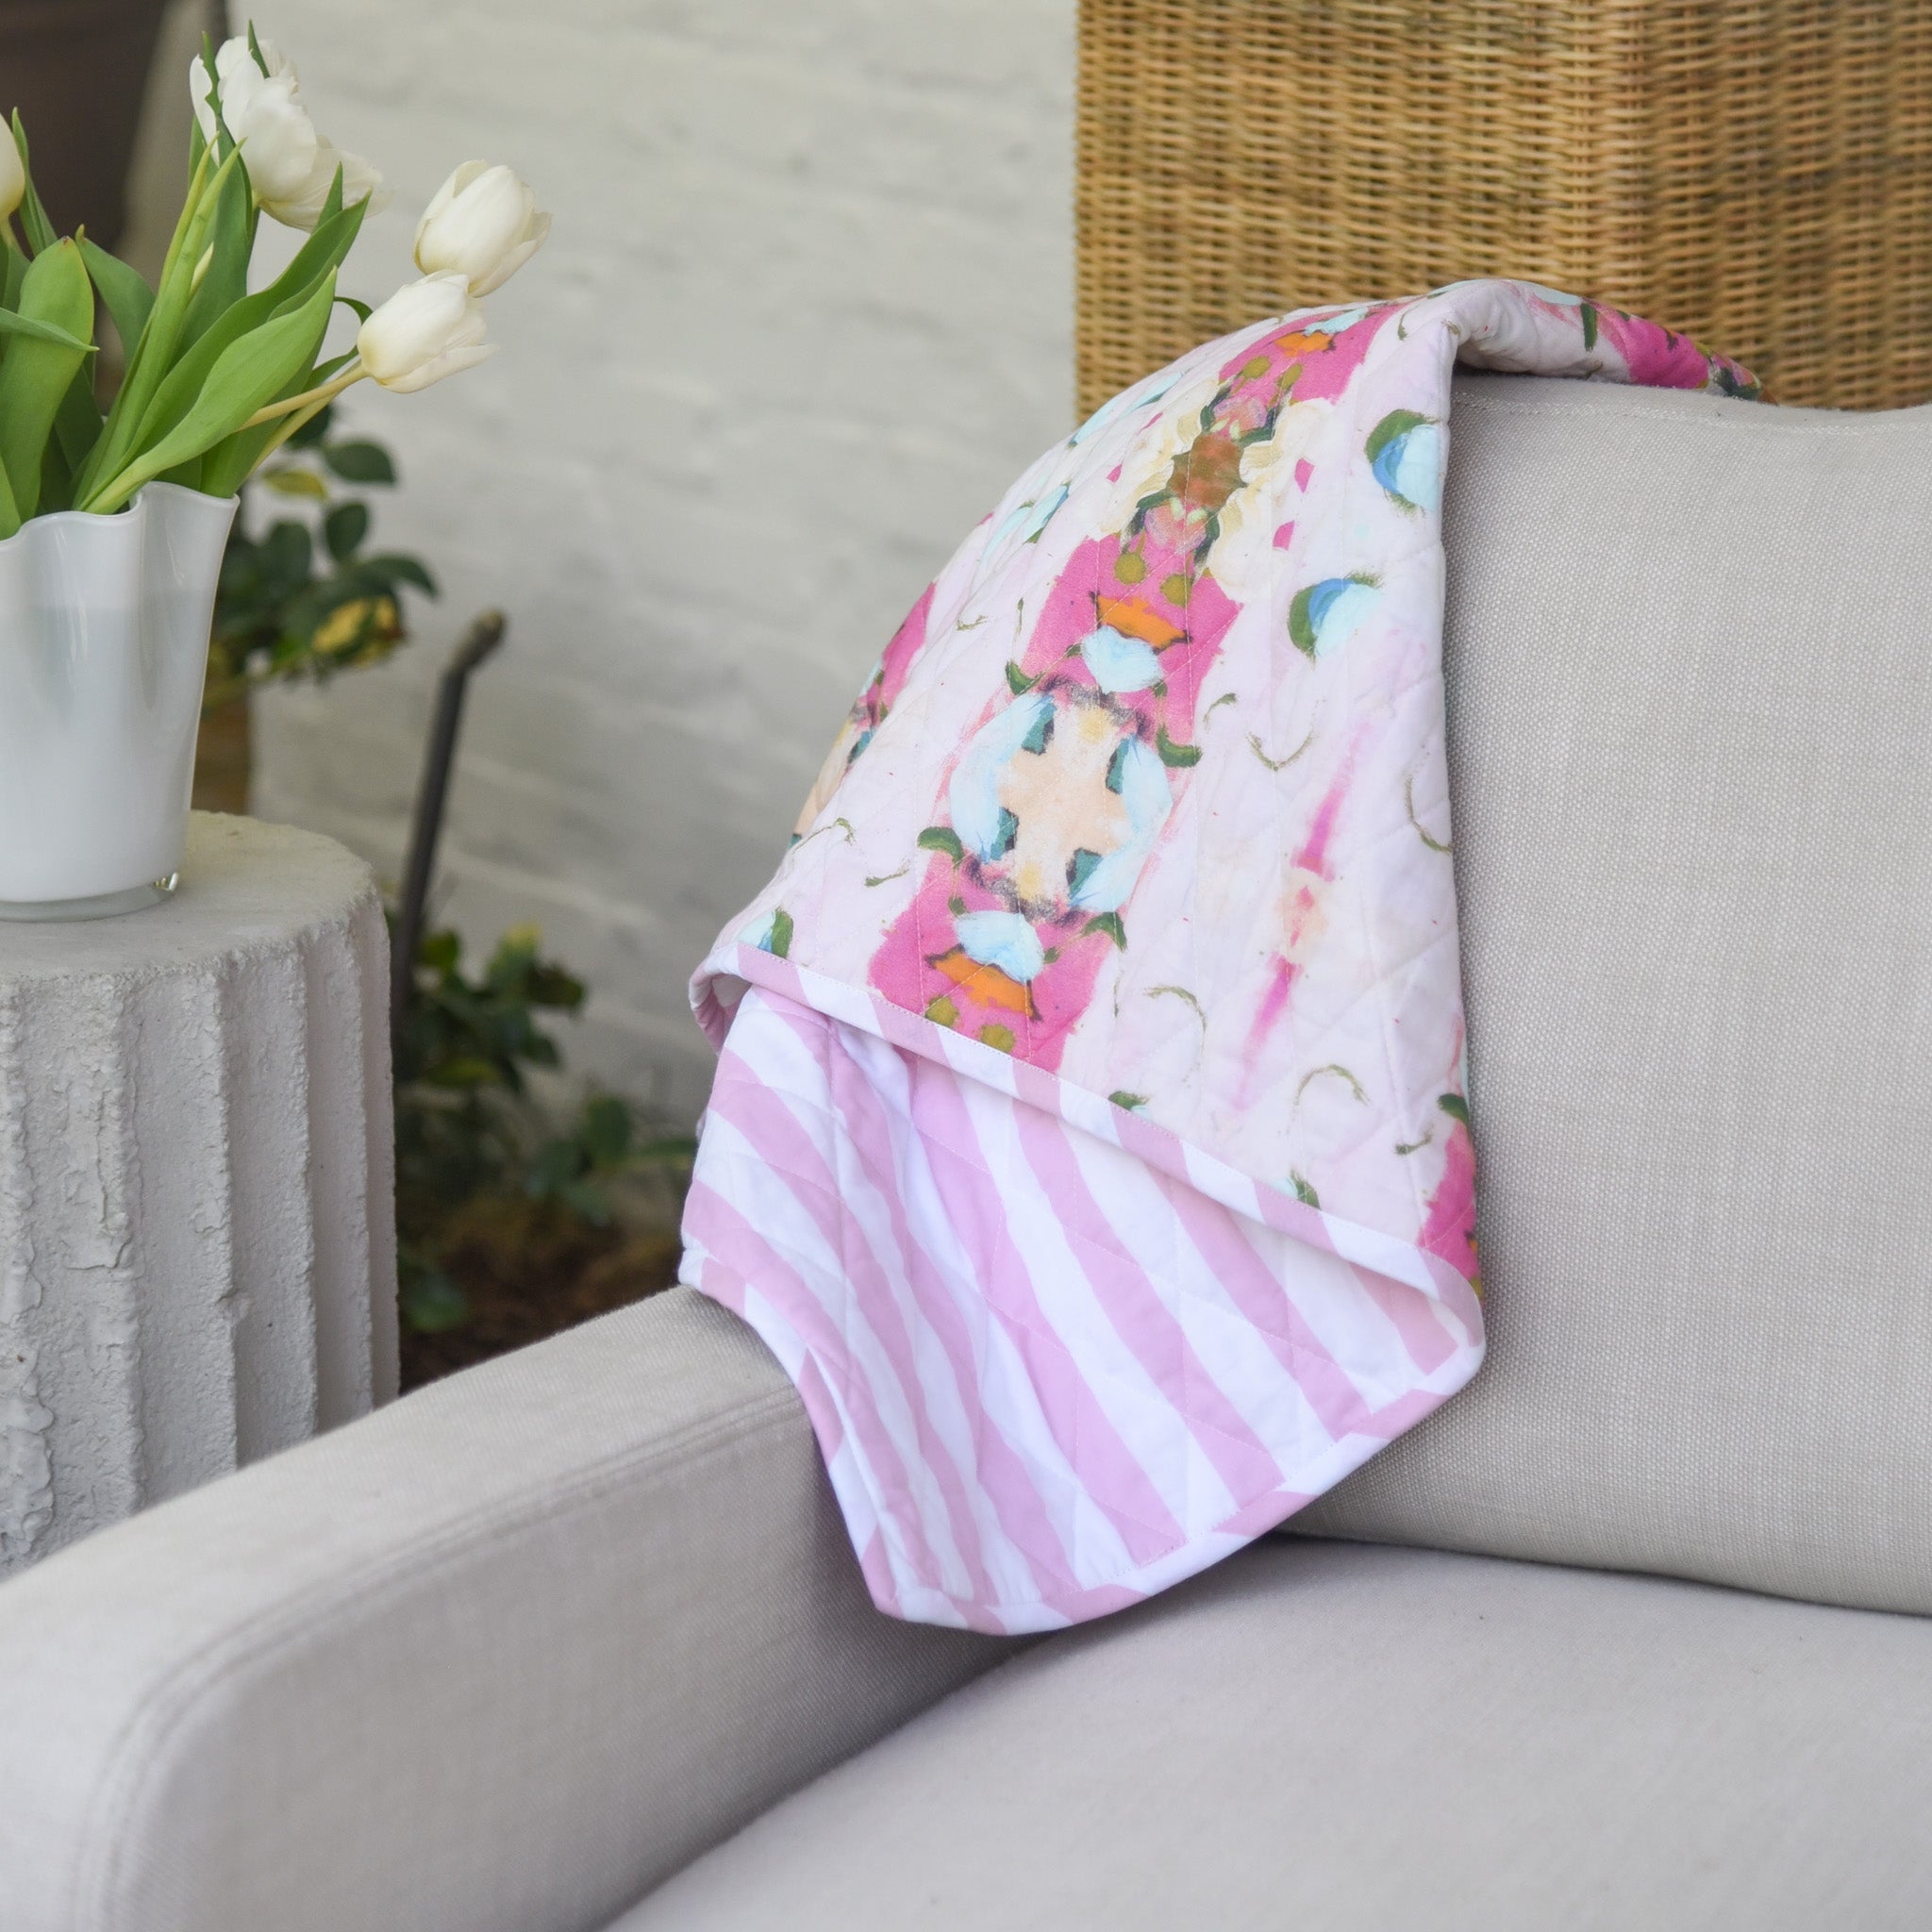 Laura Park Monet's Garden Baby Blanket